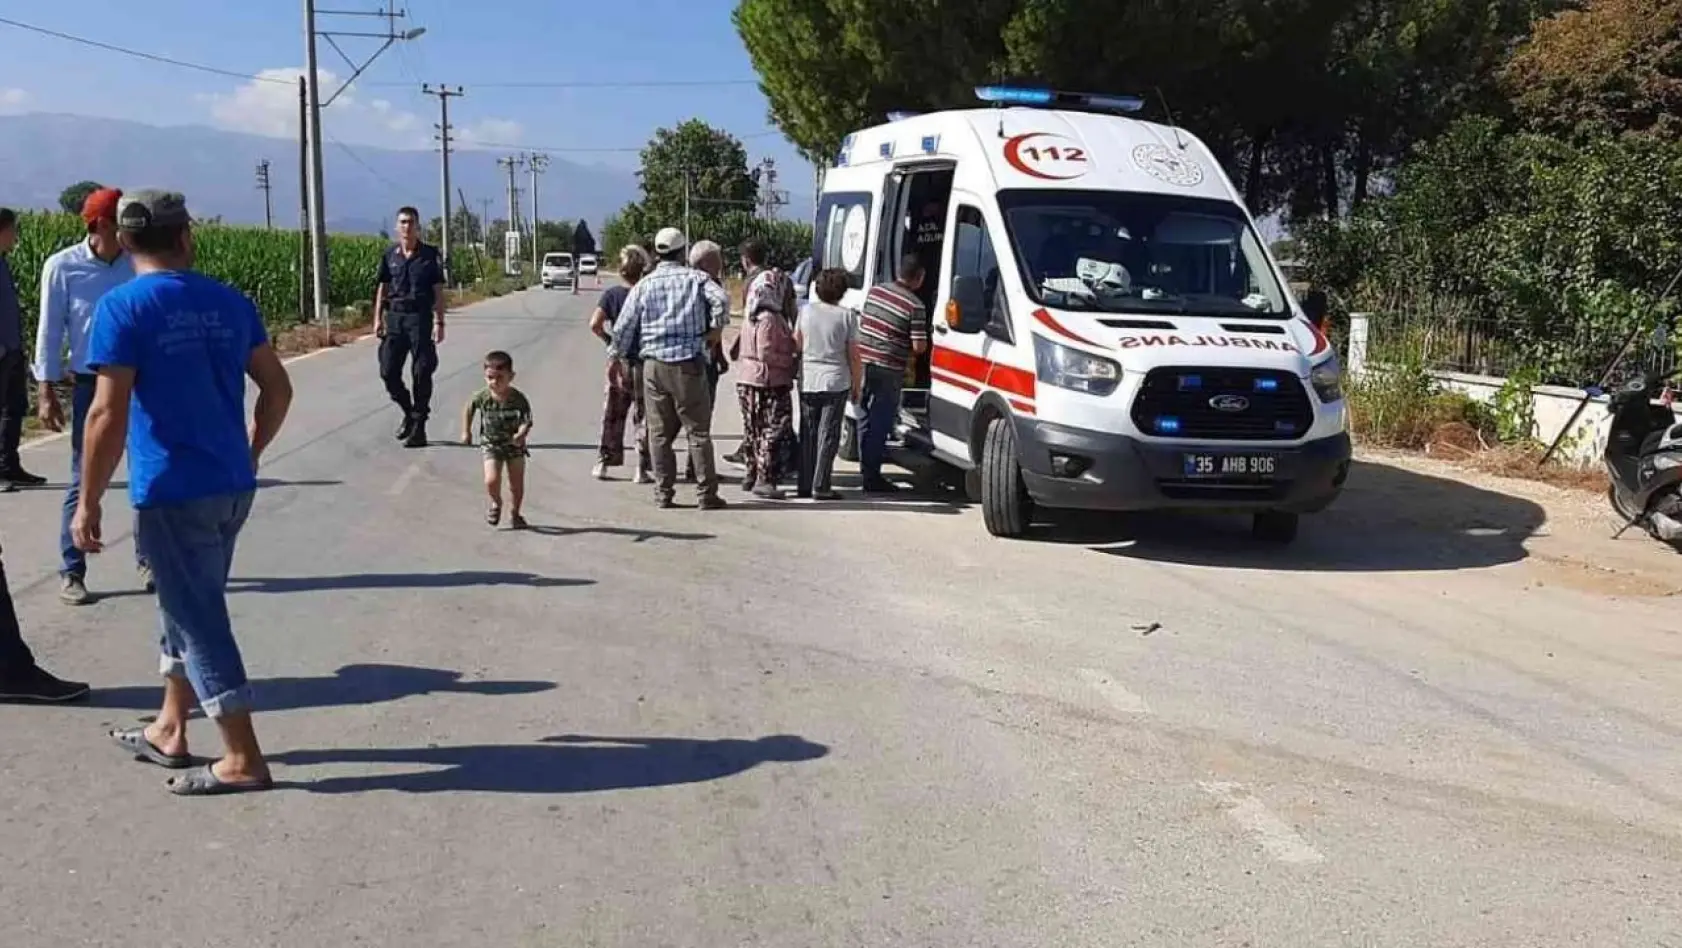 İzmir'de trafik kazasında yaşlı çift yaralandı